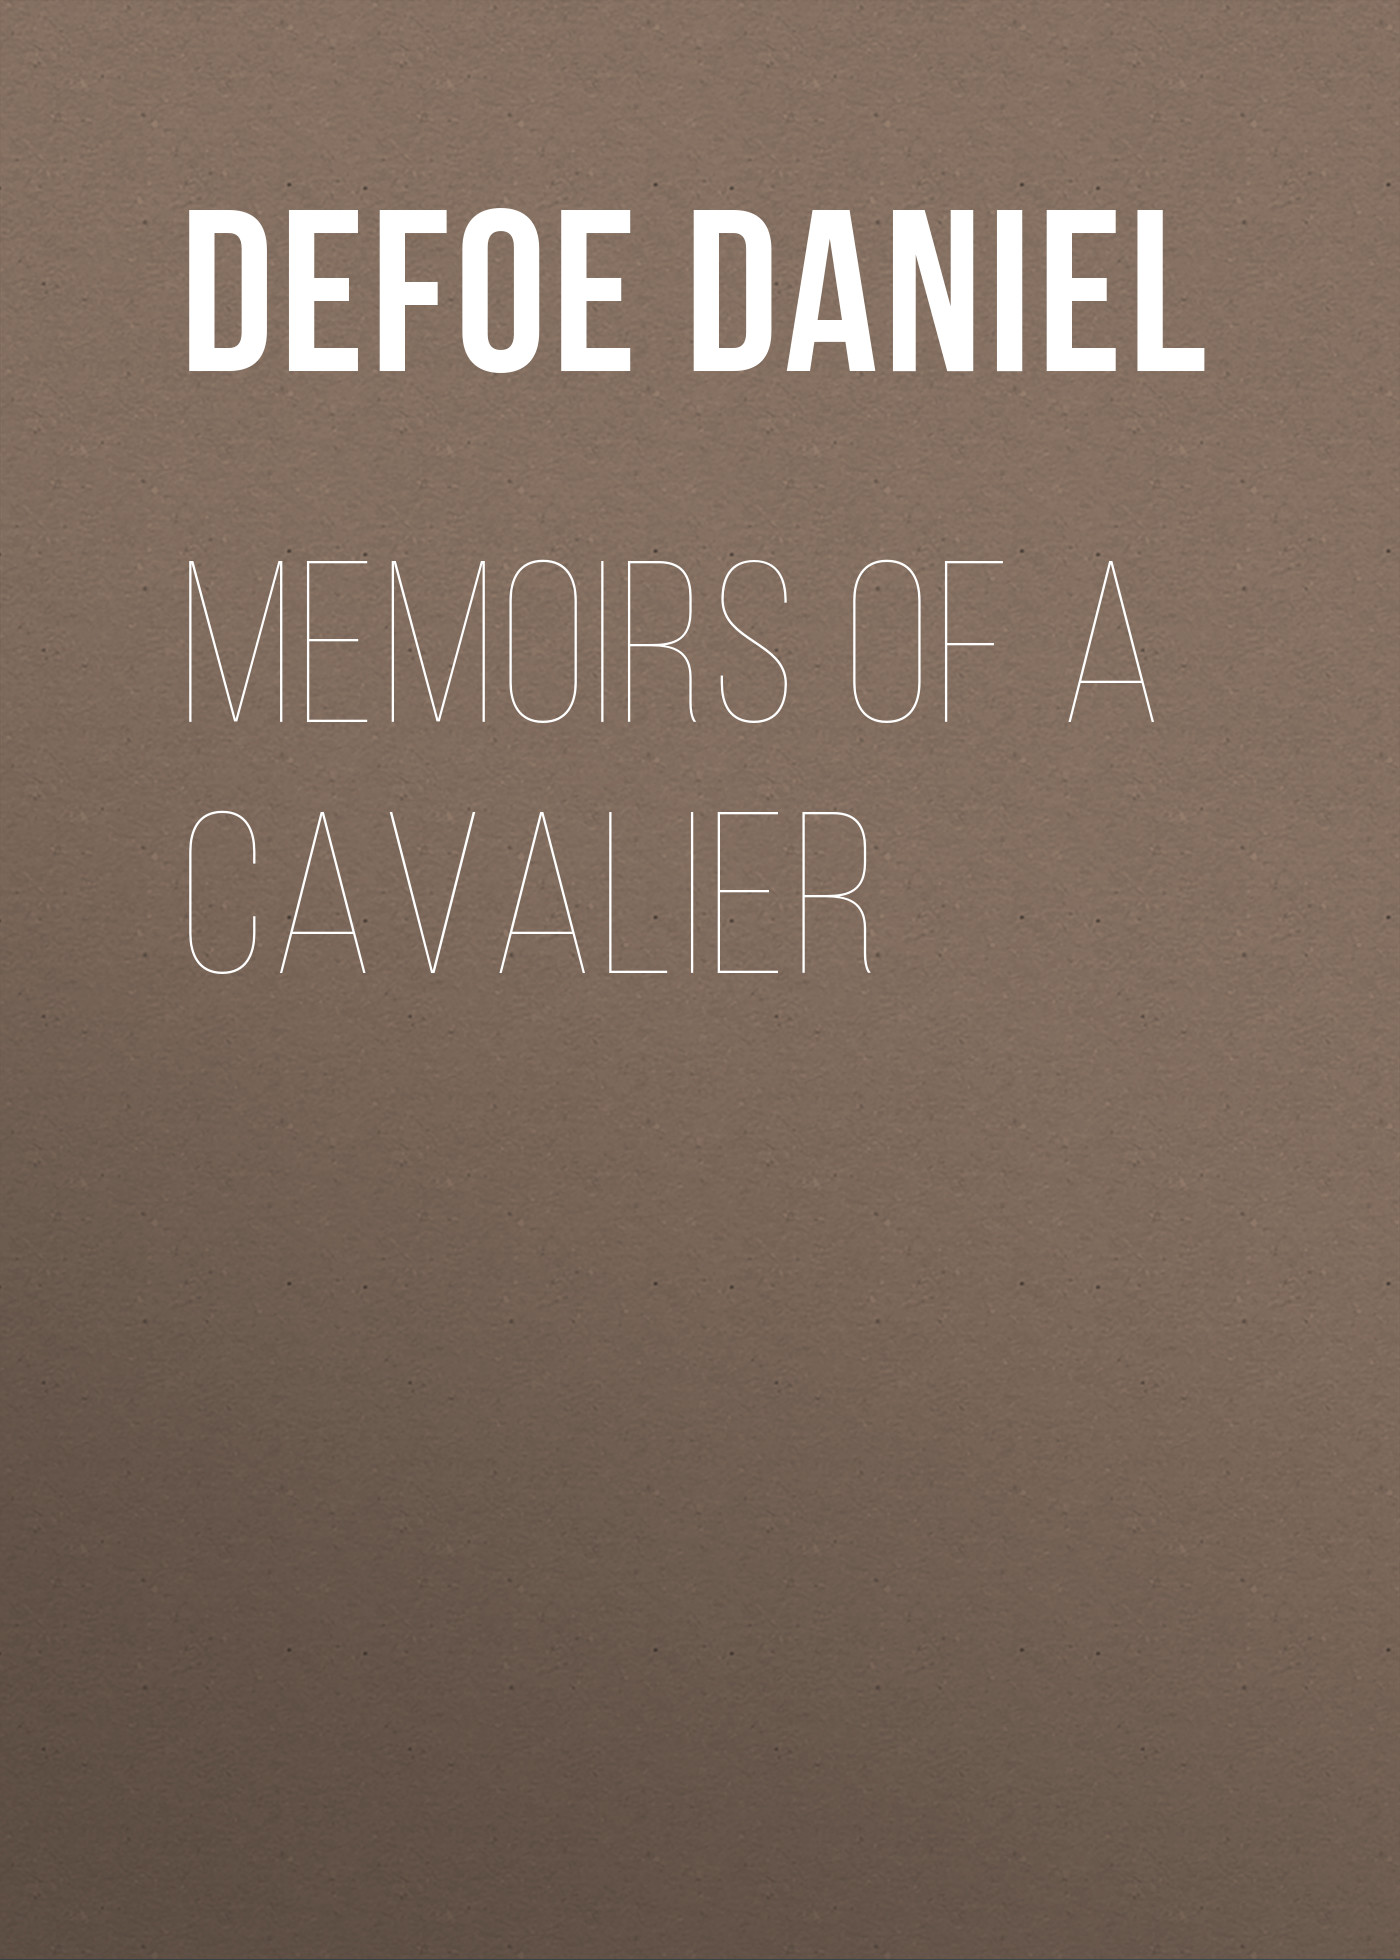 Книга Memoirs of a Cavalier из серии , созданная Daniel Defoe, может относится к жанру Зарубежная старинная литература, Зарубежная классика. Стоимость электронной книги Memoirs of a Cavalier с идентификатором 25092180 составляет 0 руб.